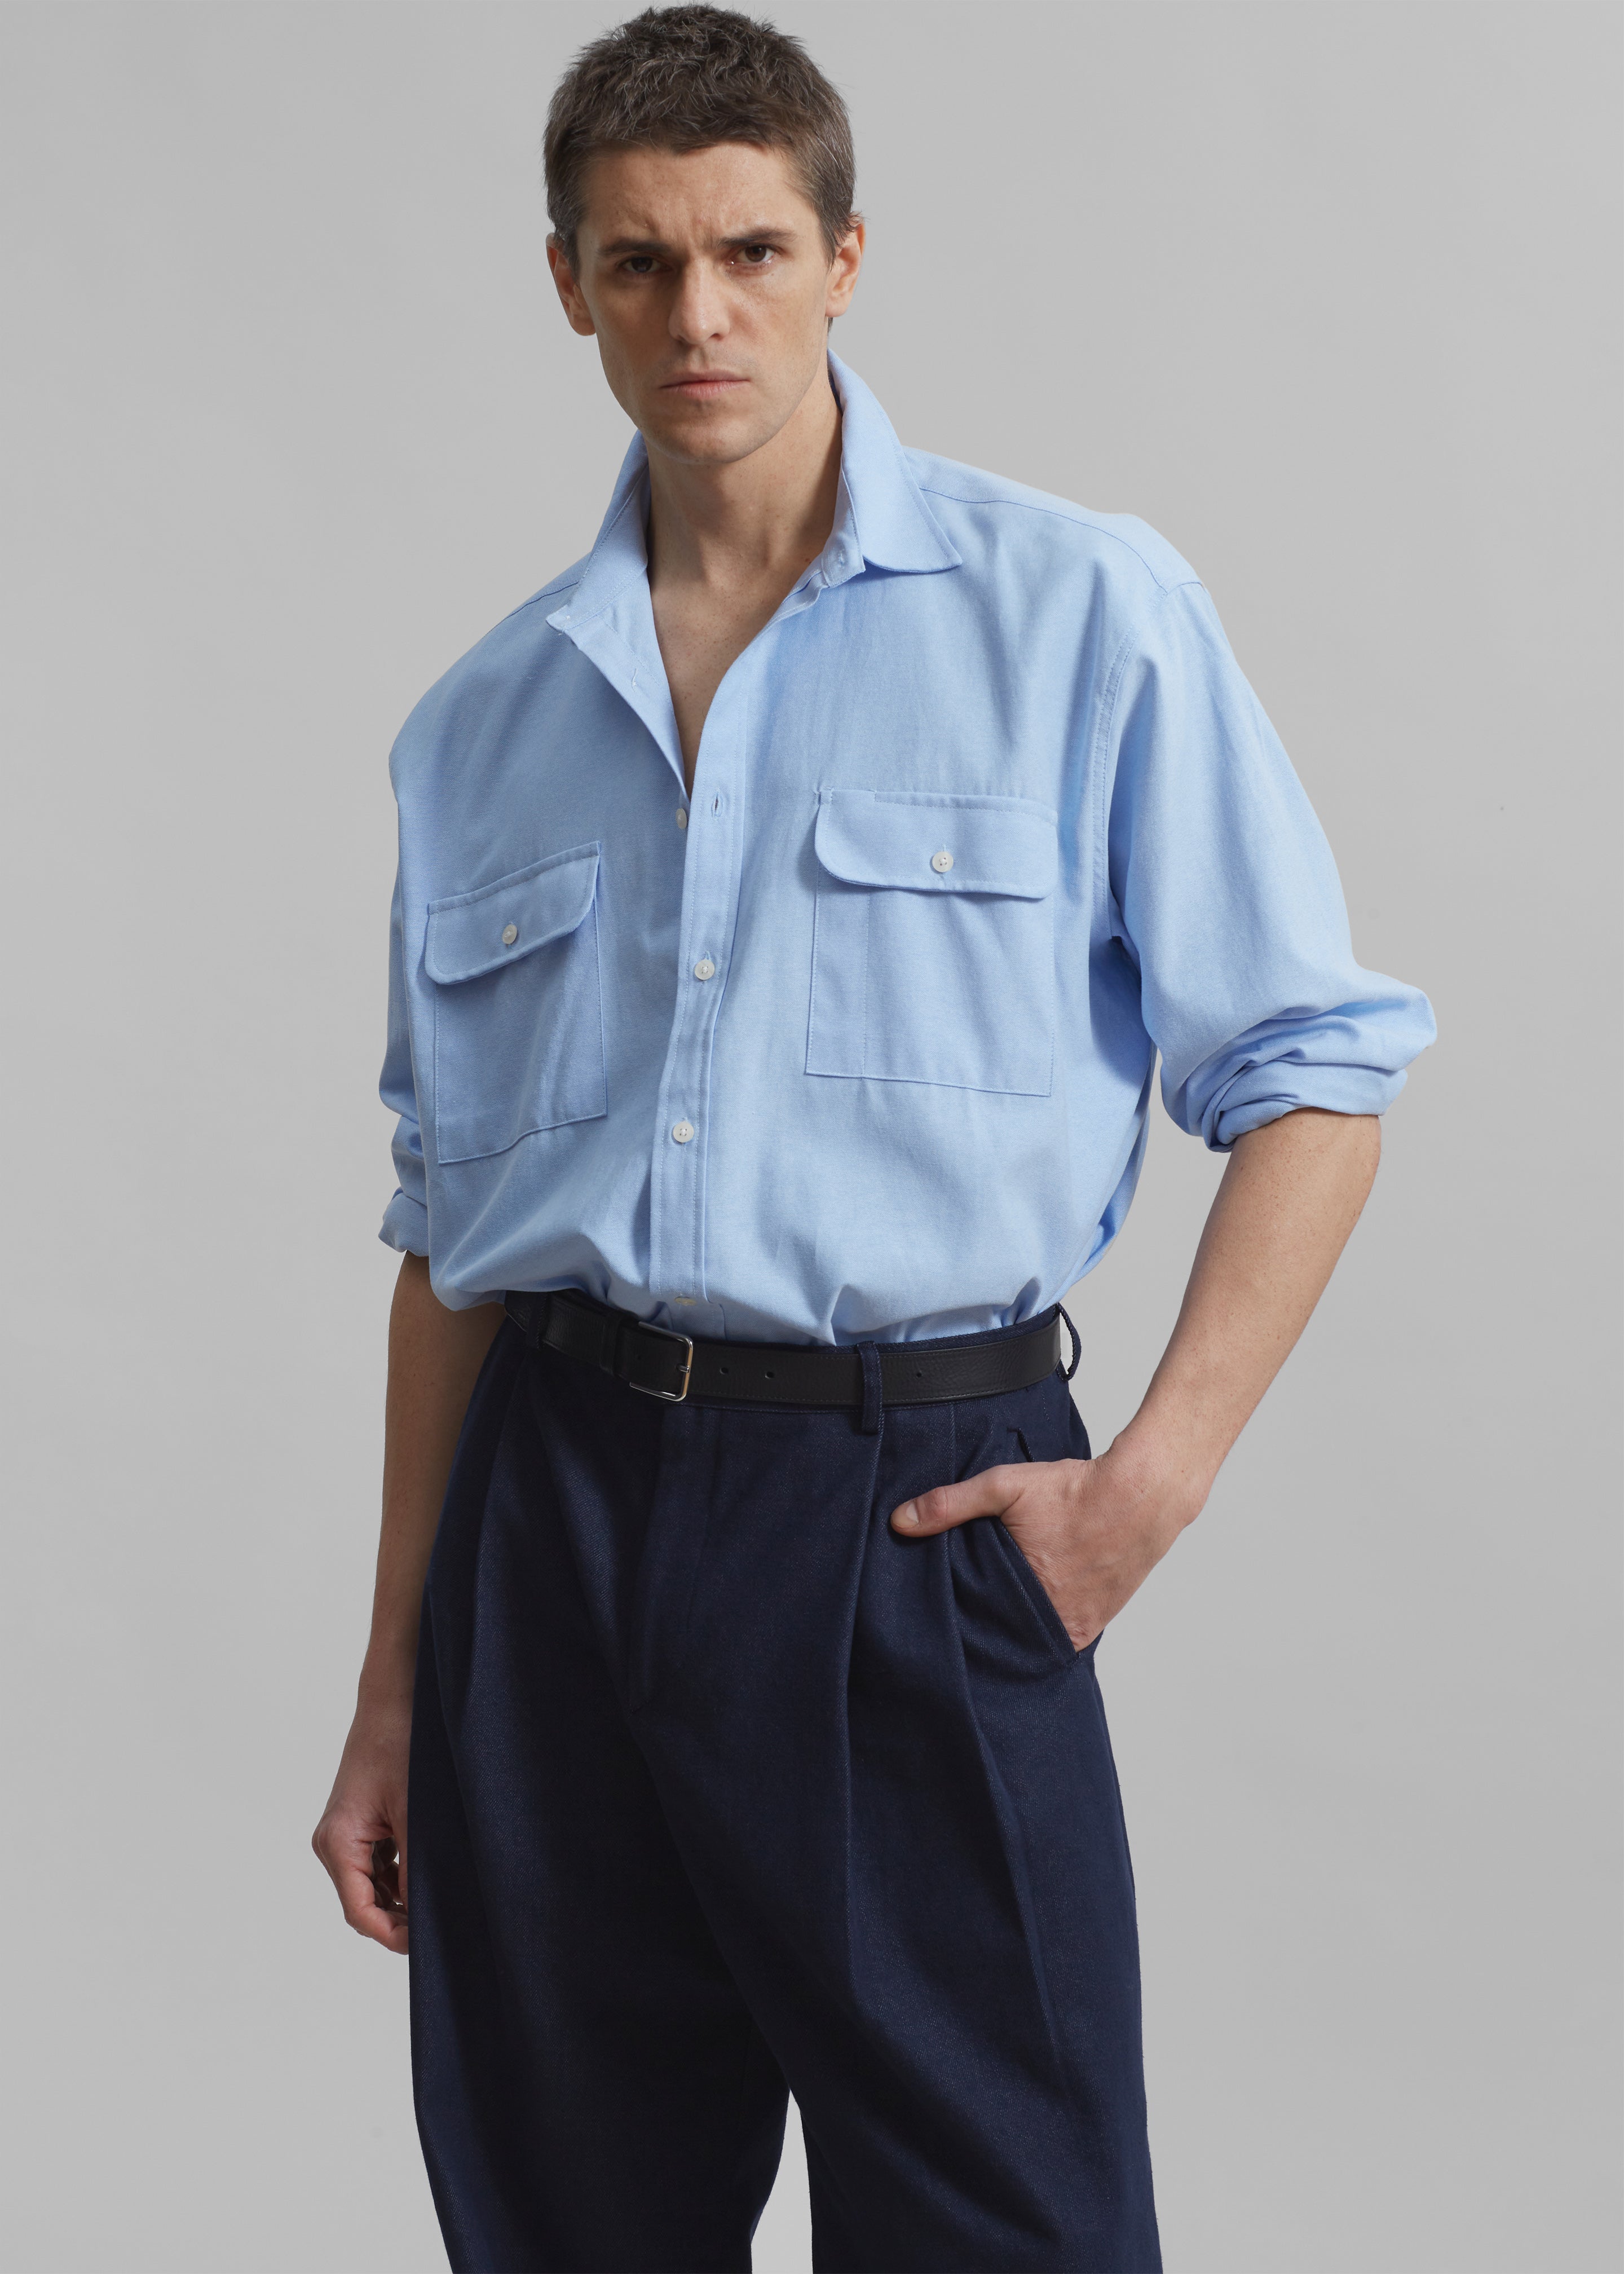 Alexander Button Up Shirt - Blue - 1